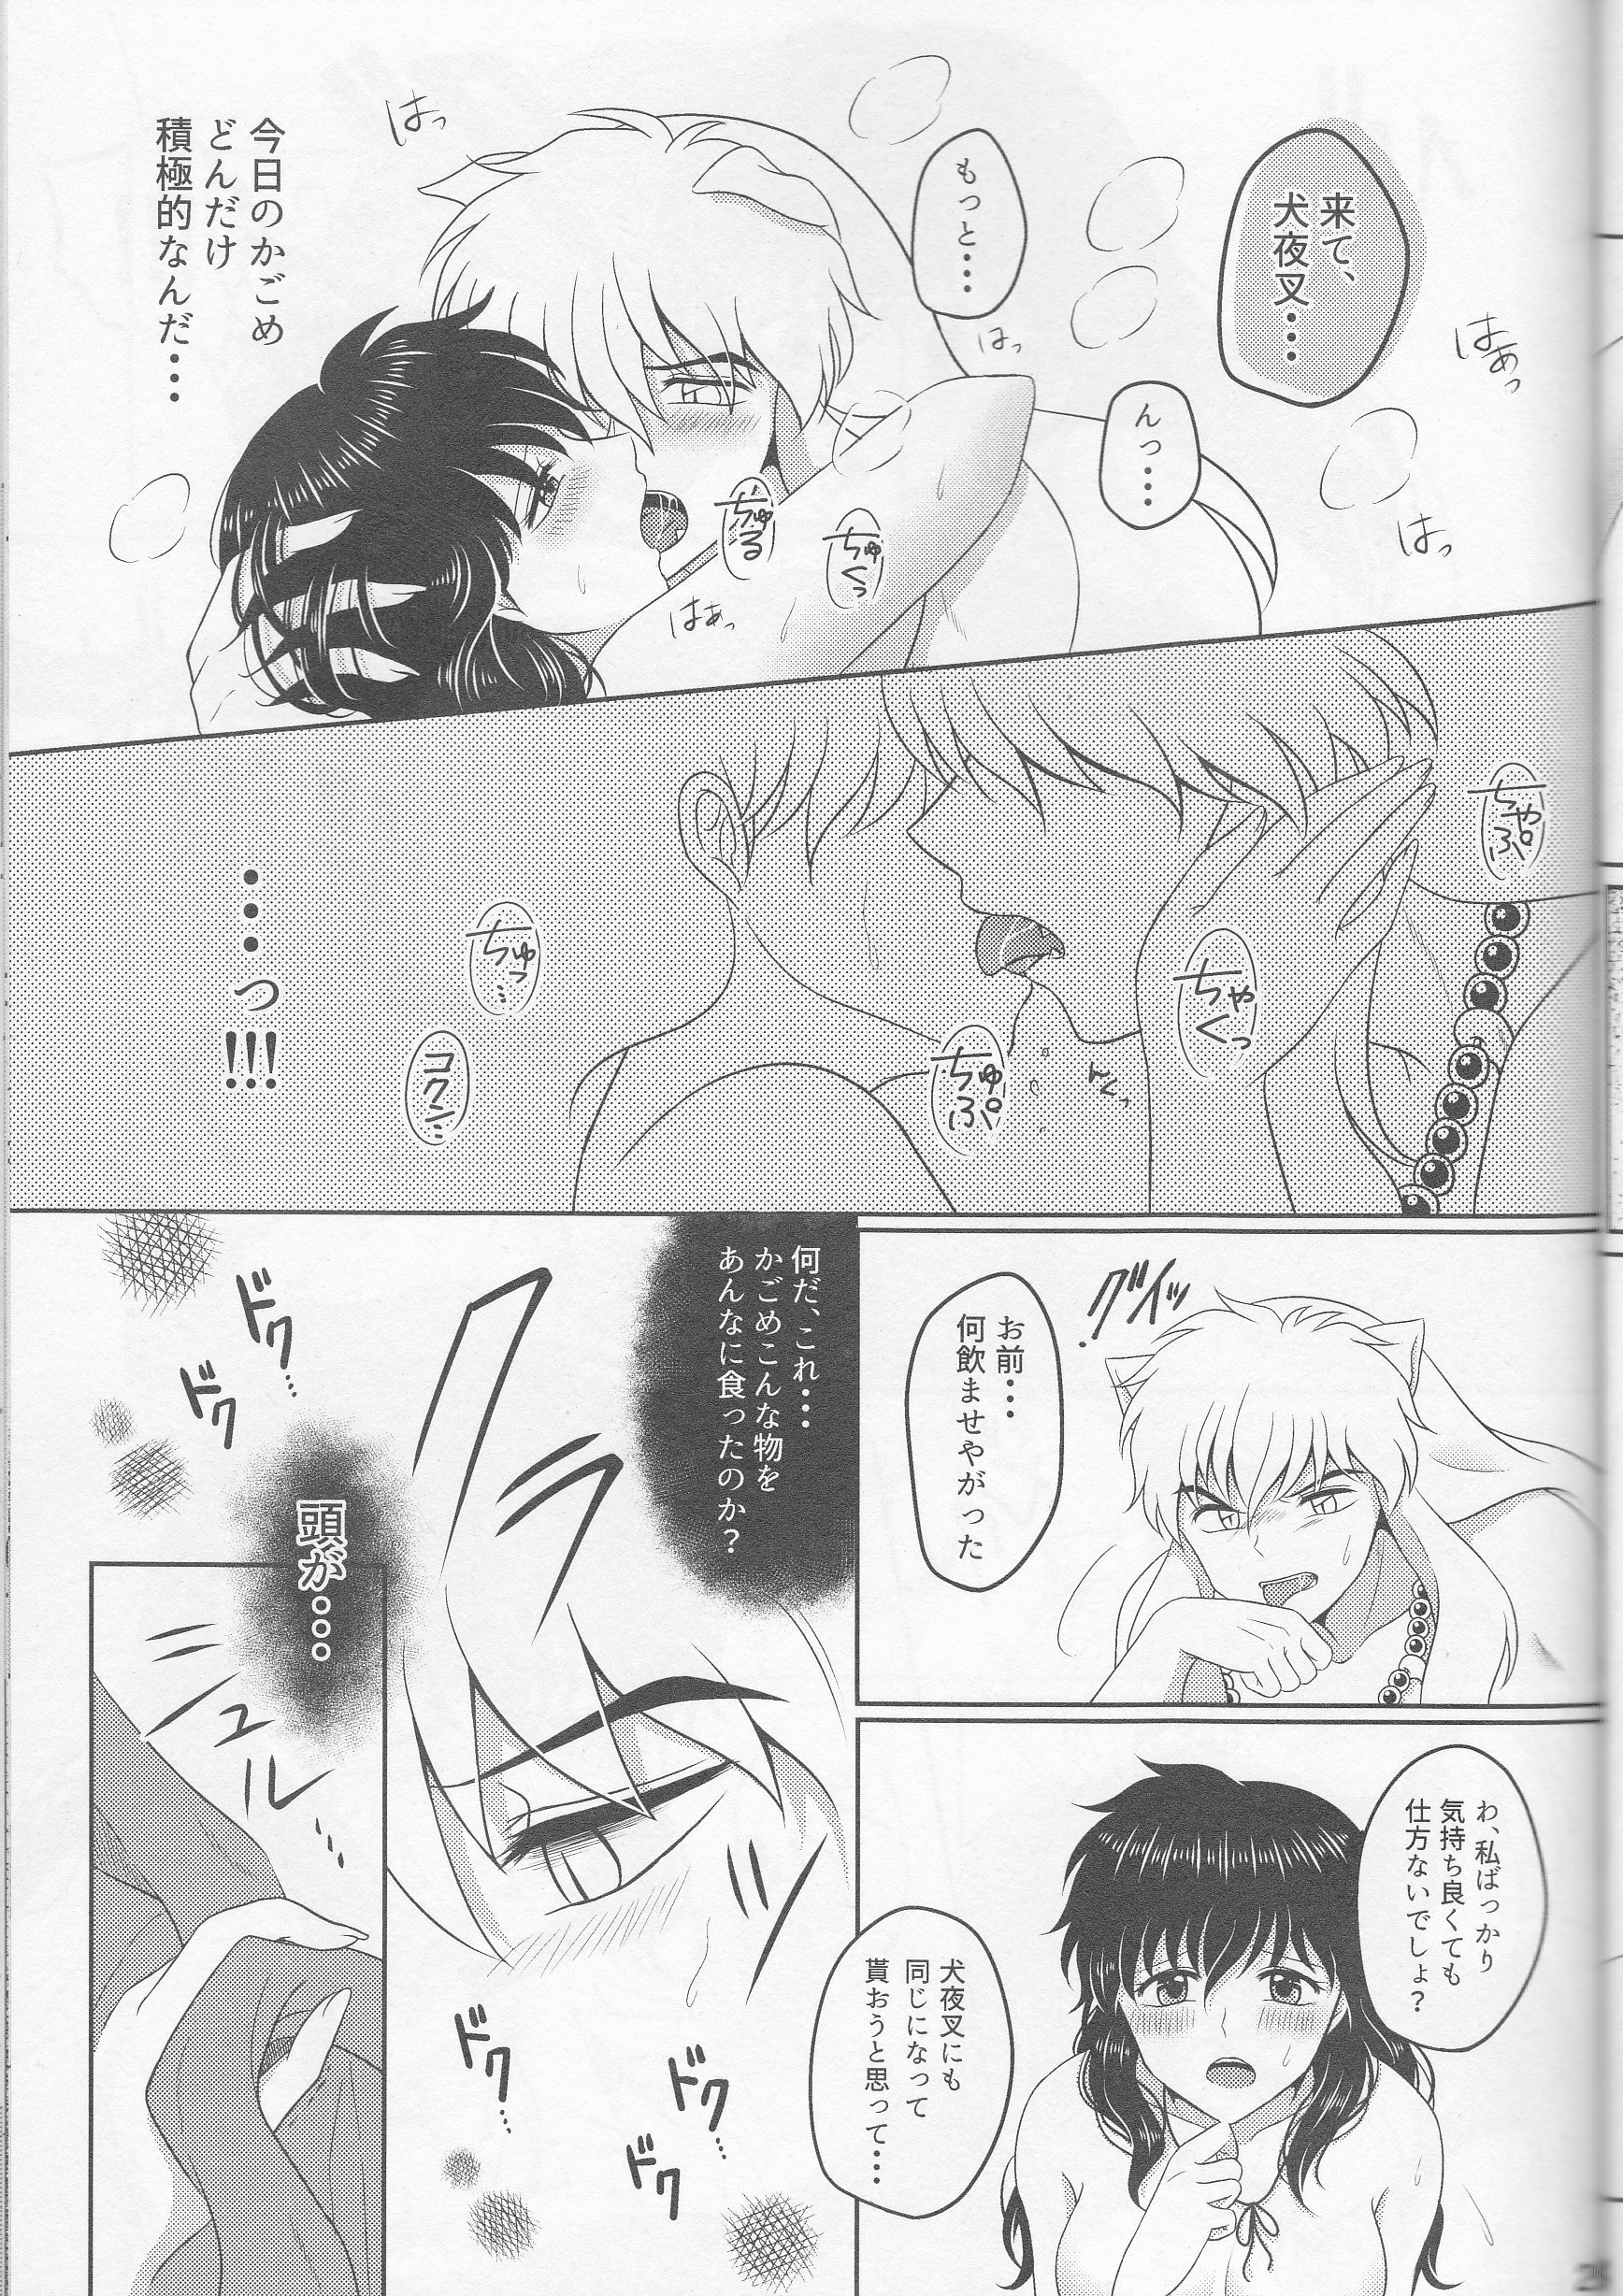 Koi Gusuri - Love drug hentai manga picture 26